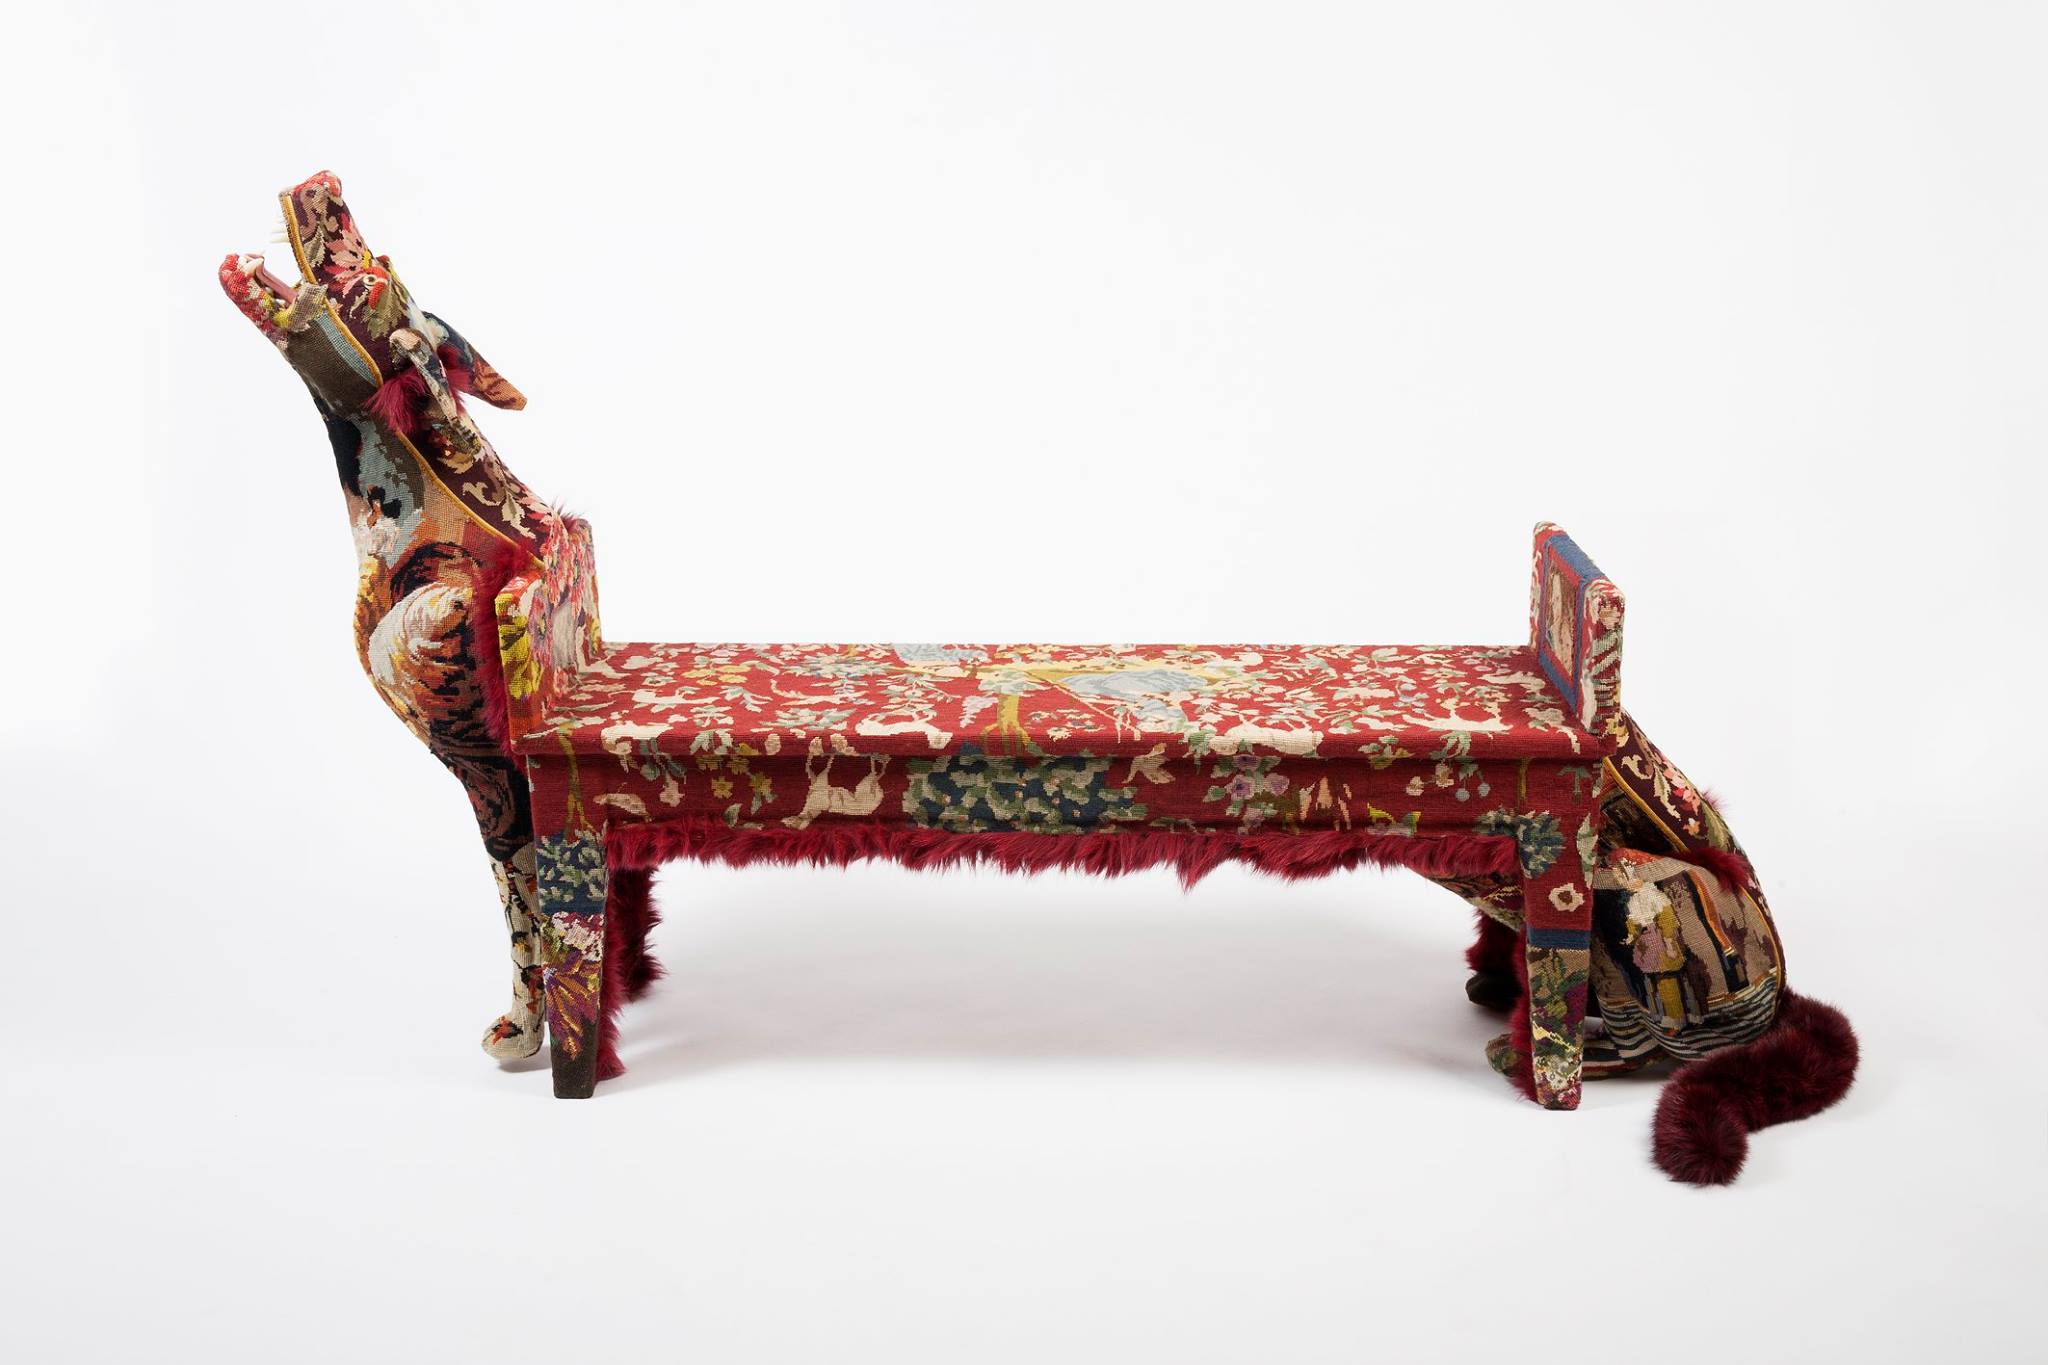 Frédérique Morrel – Tapestry Sculptures